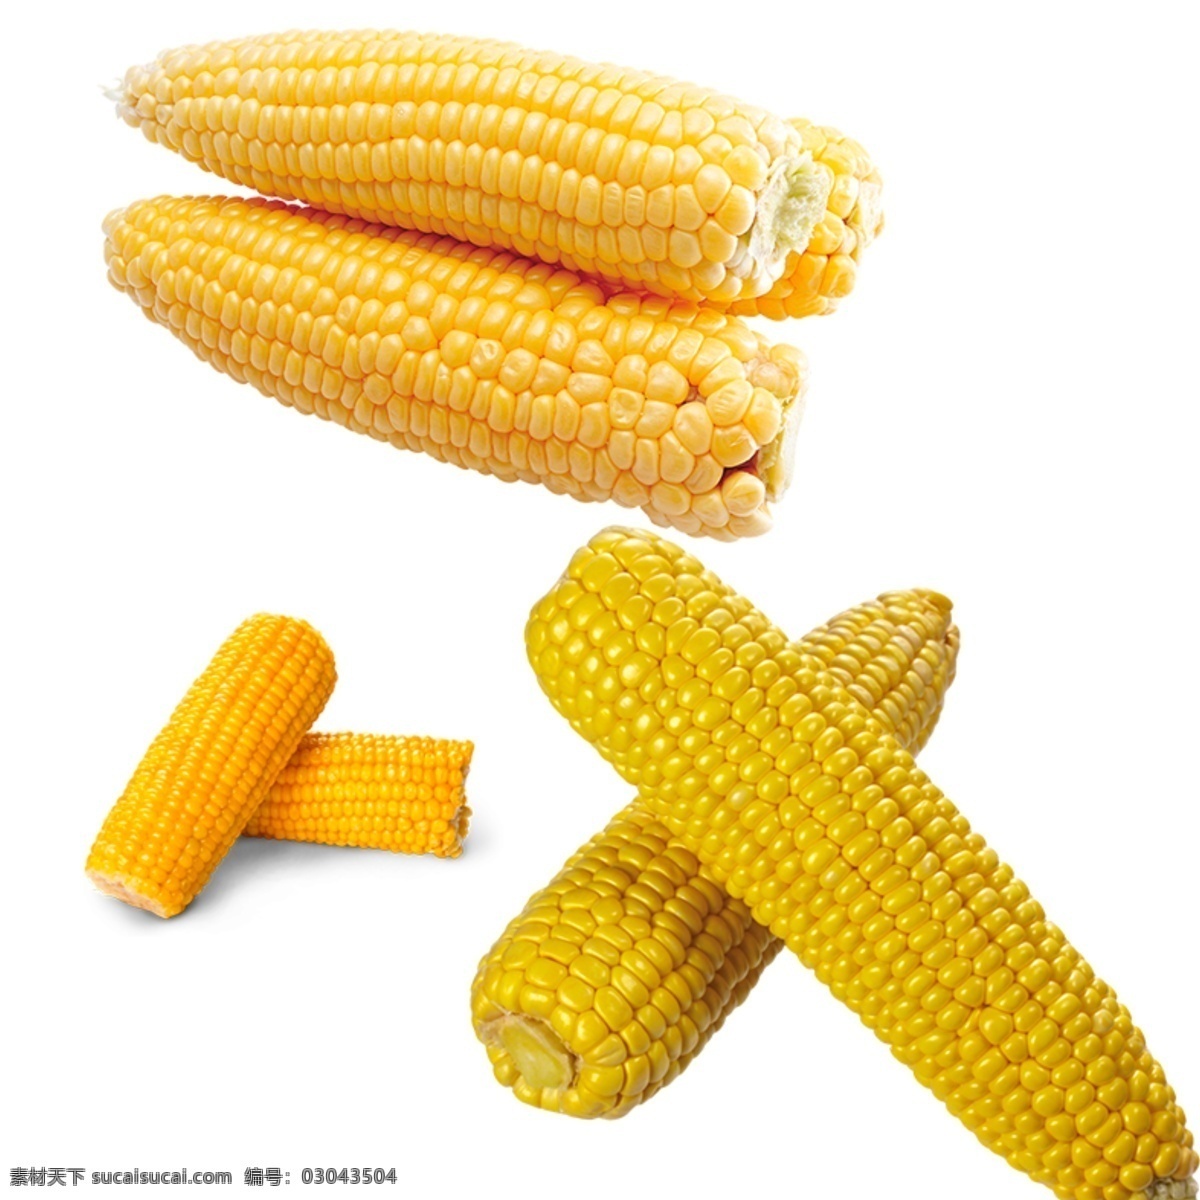 玉米图片 玉米 水果玉米 黄色玉米 五谷杂粮 玉米元素 玉米素材